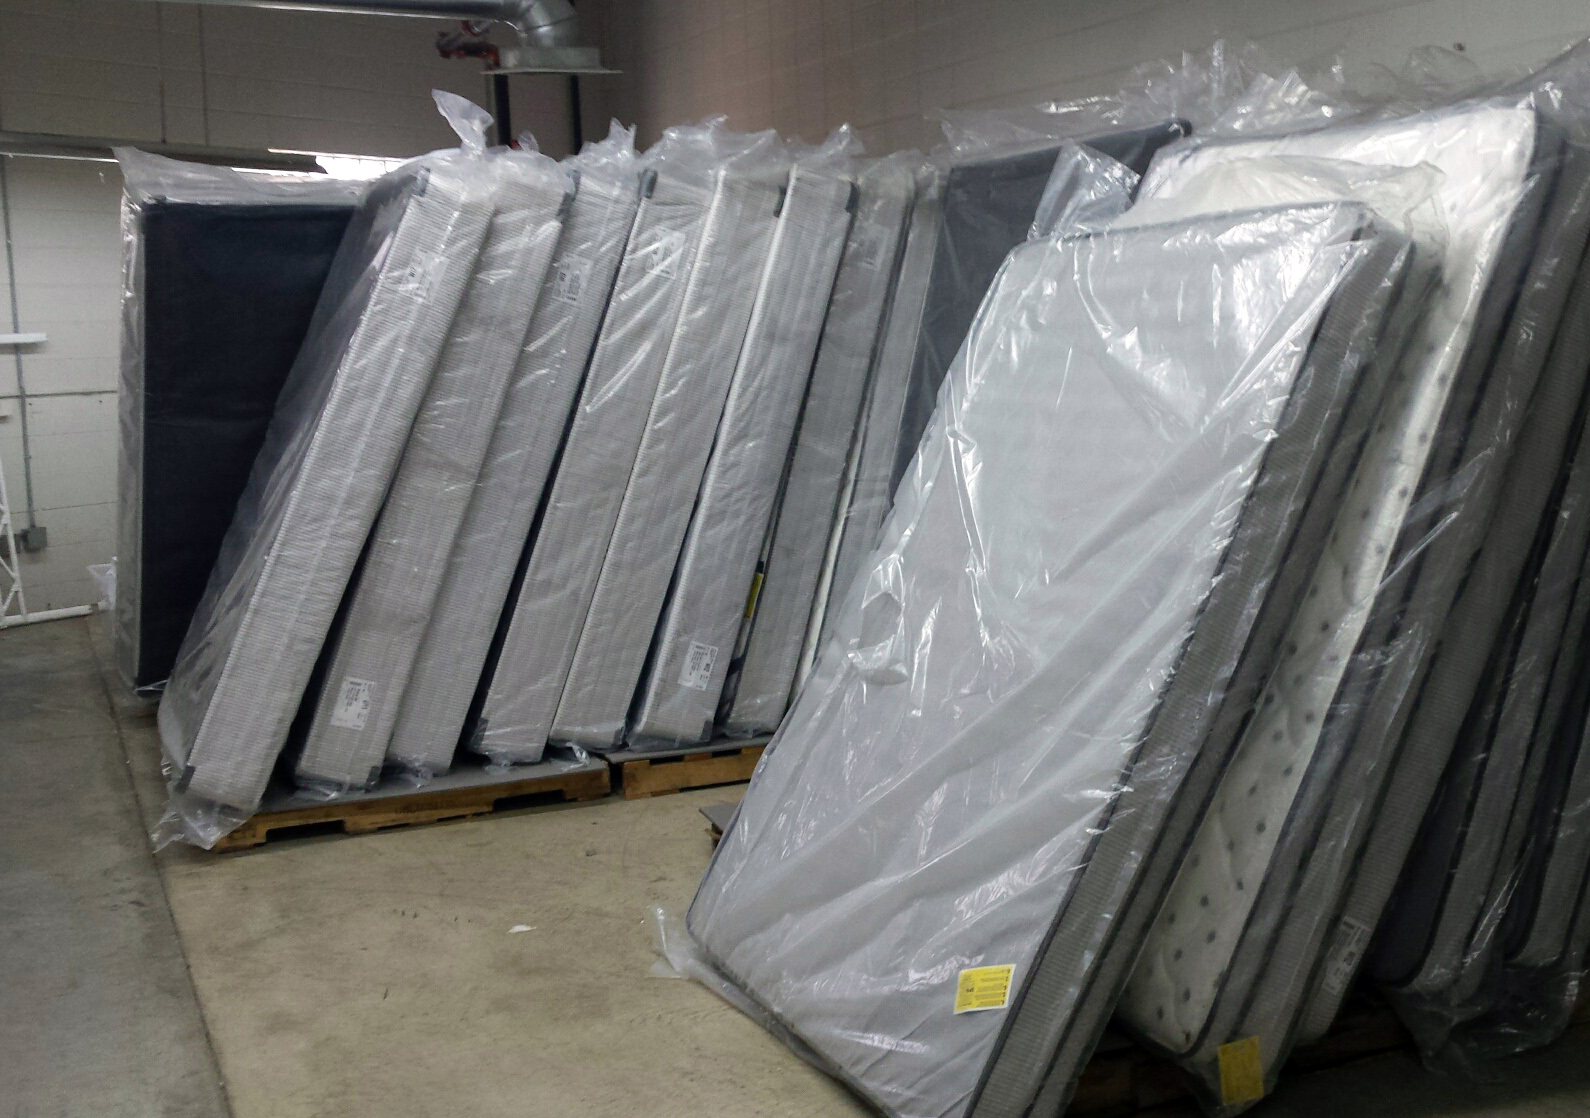 Donated mattresses in Milwaukee Homeless Veterans Initiative warehouse